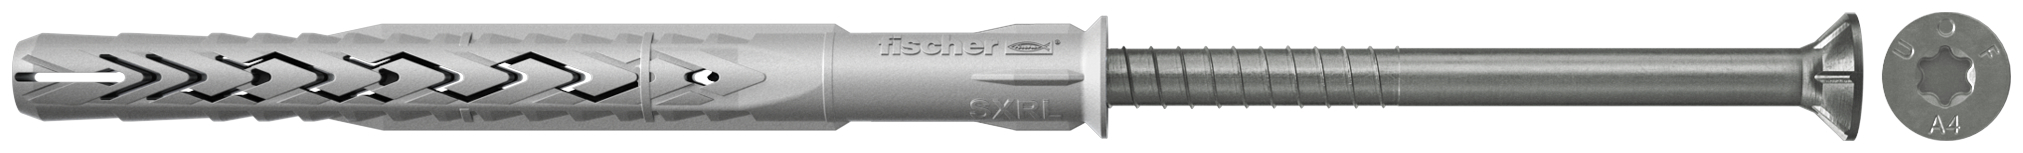 fischer Tasselli prolungati SXRL 10X120 T A4 (1 Pz.) Tassello prolungato in nylon con marcatura CE con vite premontata in acciaio inox A4, T.S.P. impronta torx.